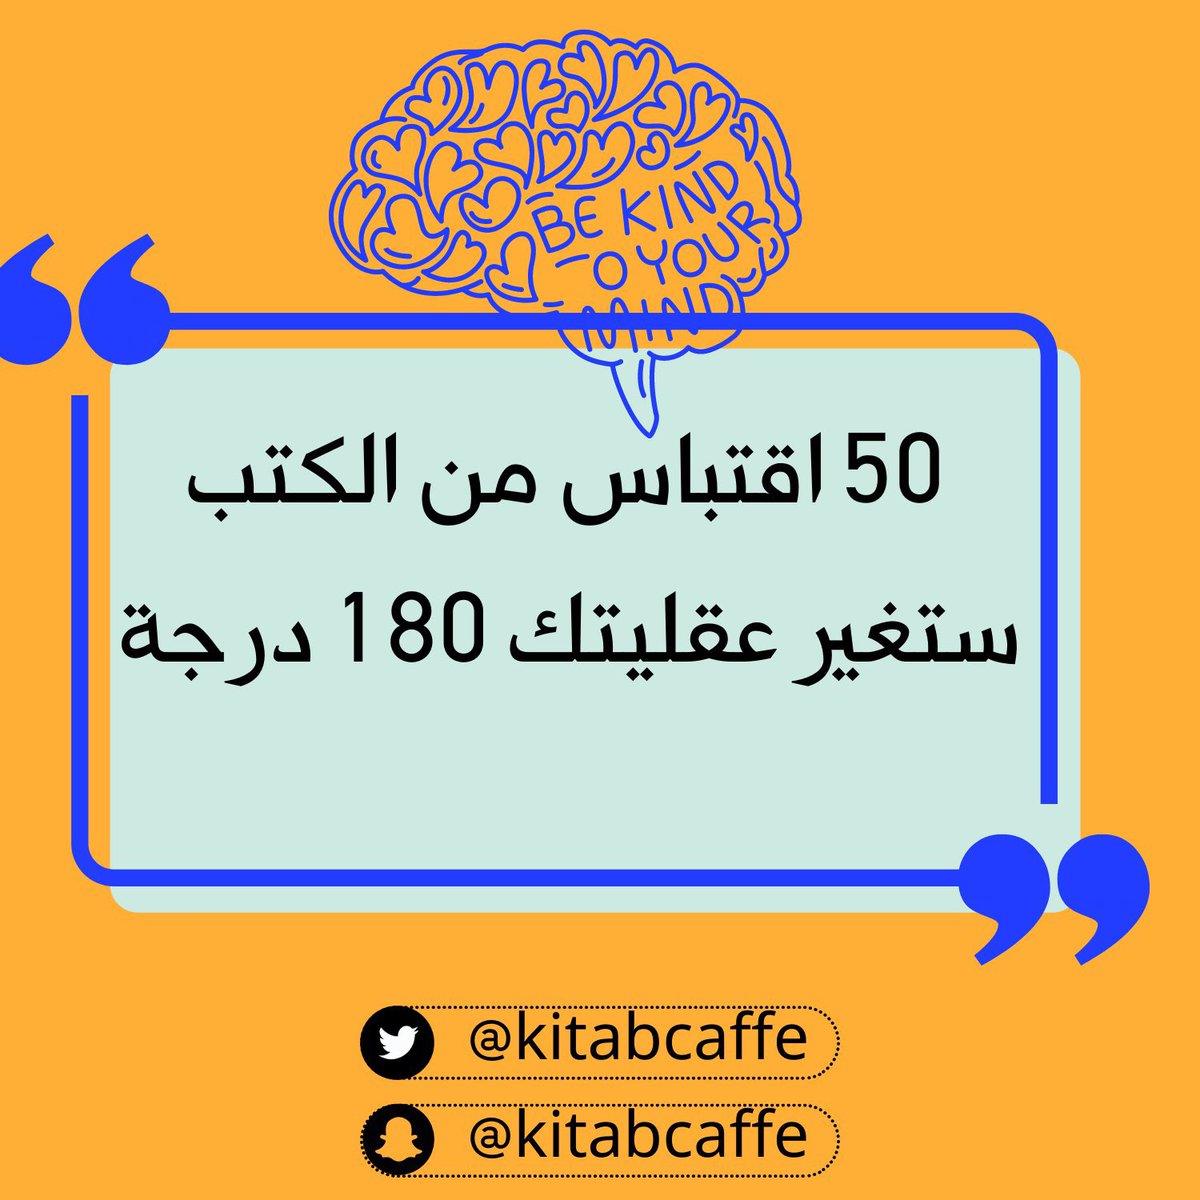 50 اقتباس من الكتب ستغير عقليتك 180 درجة ( ثريد ) #kitab_caffe